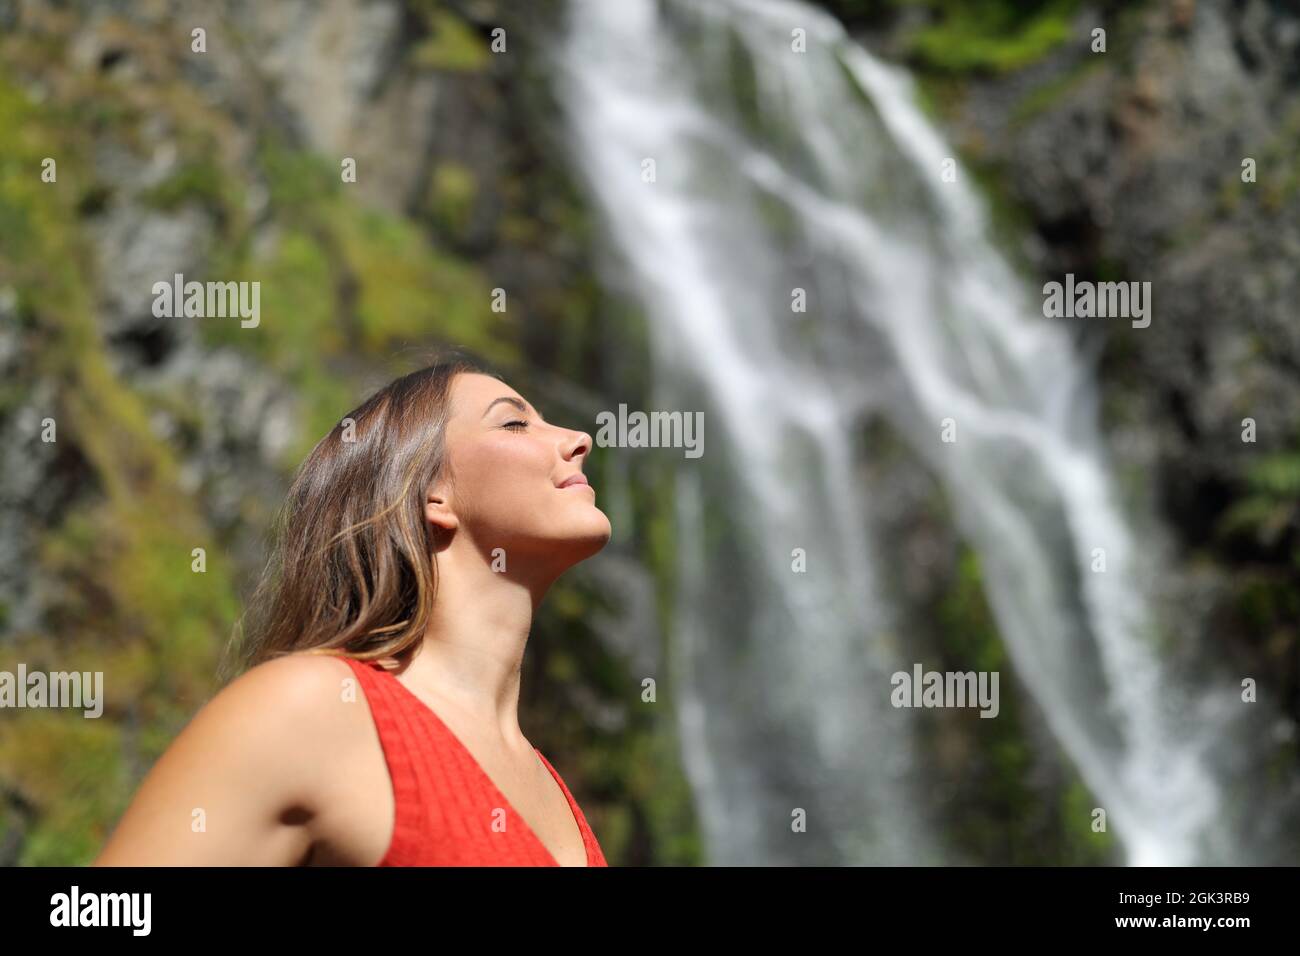 Vue latérale d'une femme détendue respirant de l'air frais dans une chute d'eau Banque D'Images